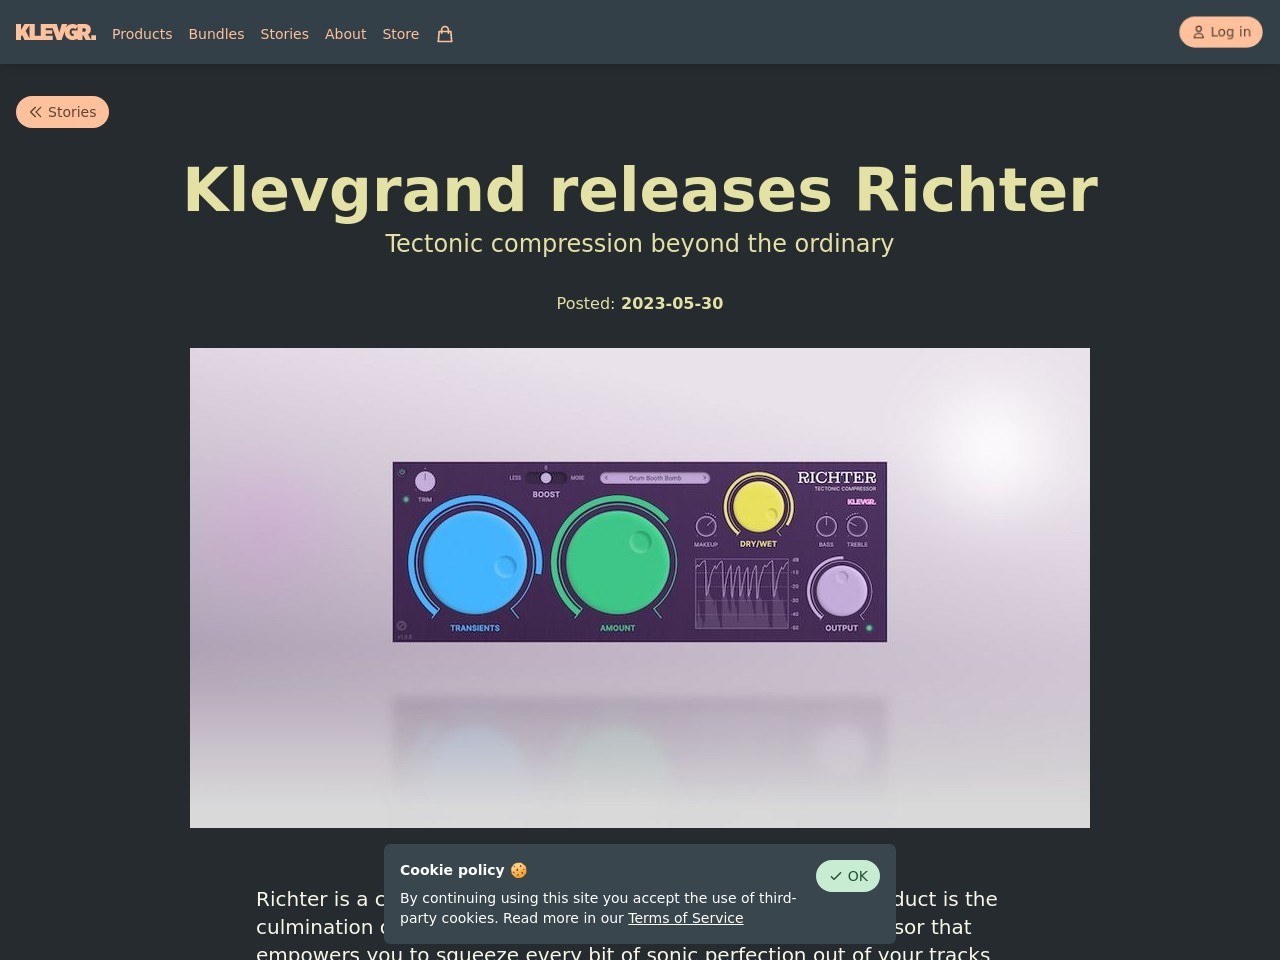 Klevgrand releases Richter